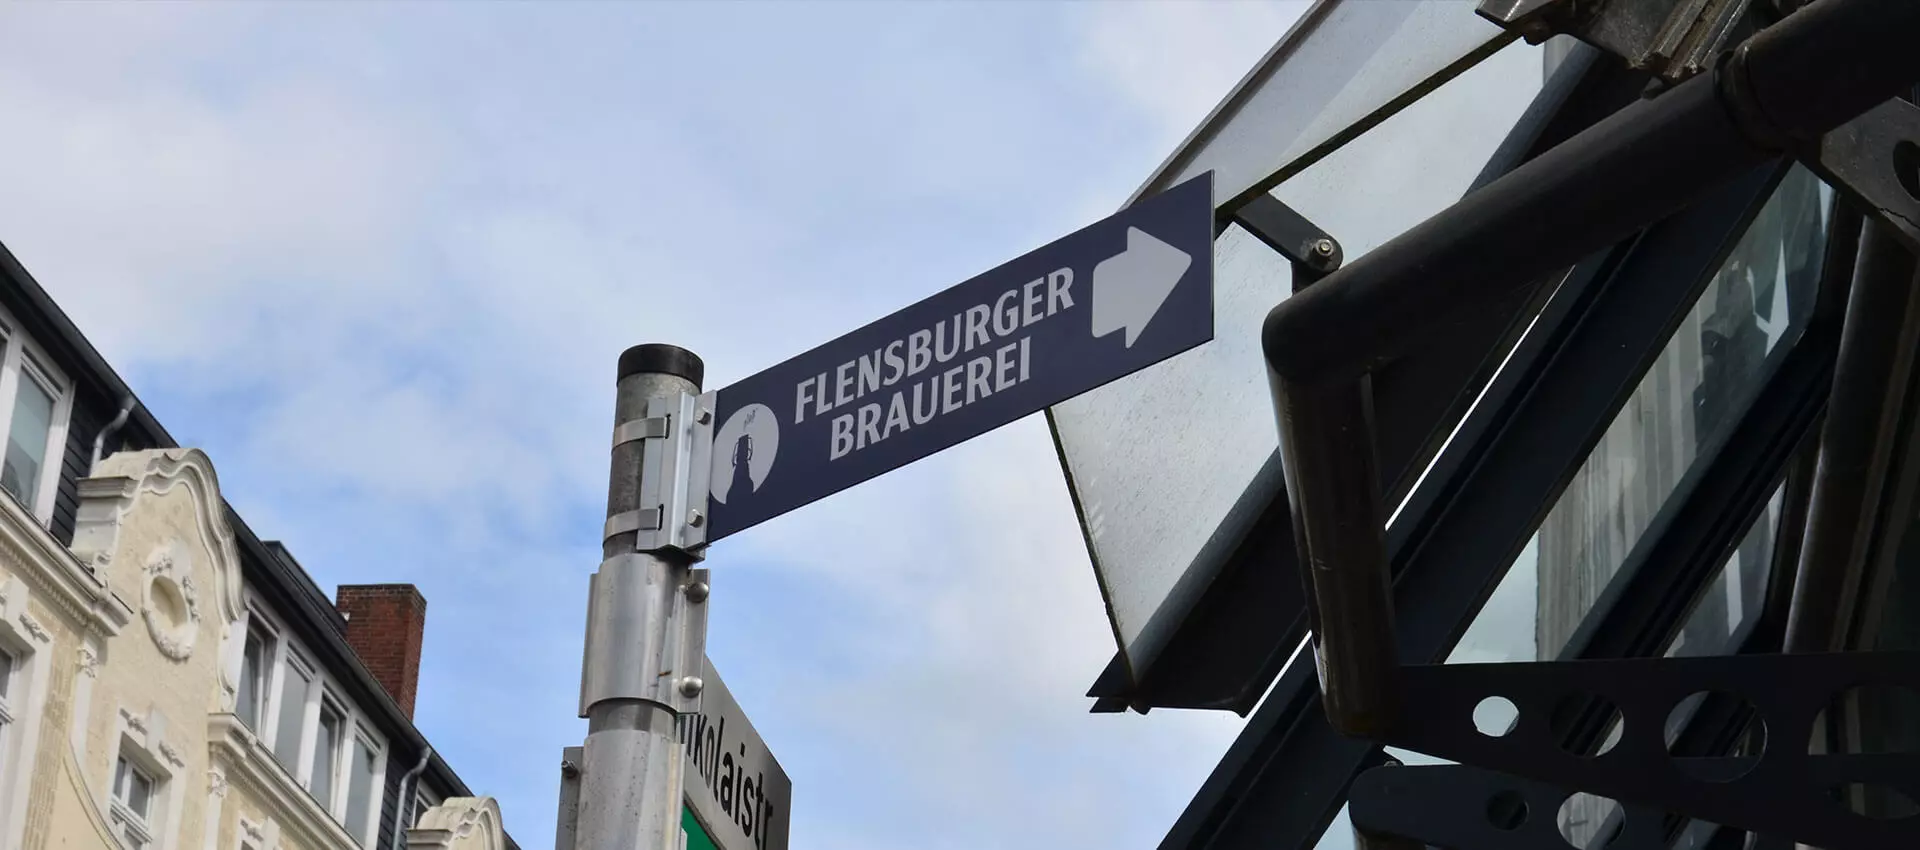 Straßenschild, das zur Flensburger Brauerei zeigt.